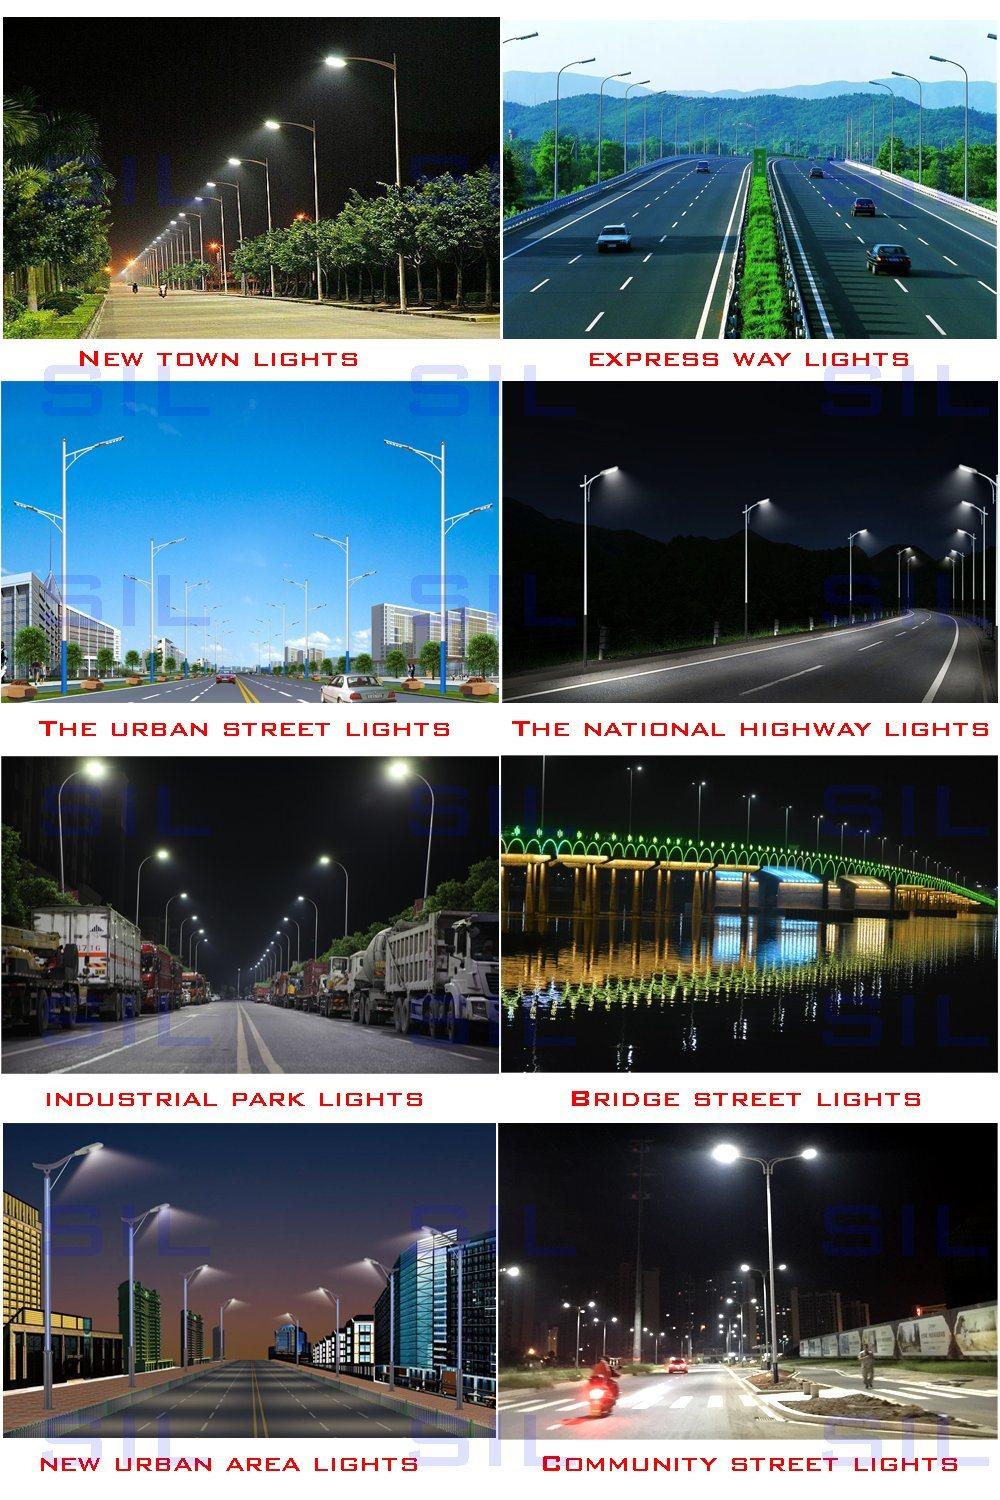 LED Street Light 50watt 50W 100W 150W 200W 250W 300W 350W 4000W Street Light 50W LED Fixed LED Street Light